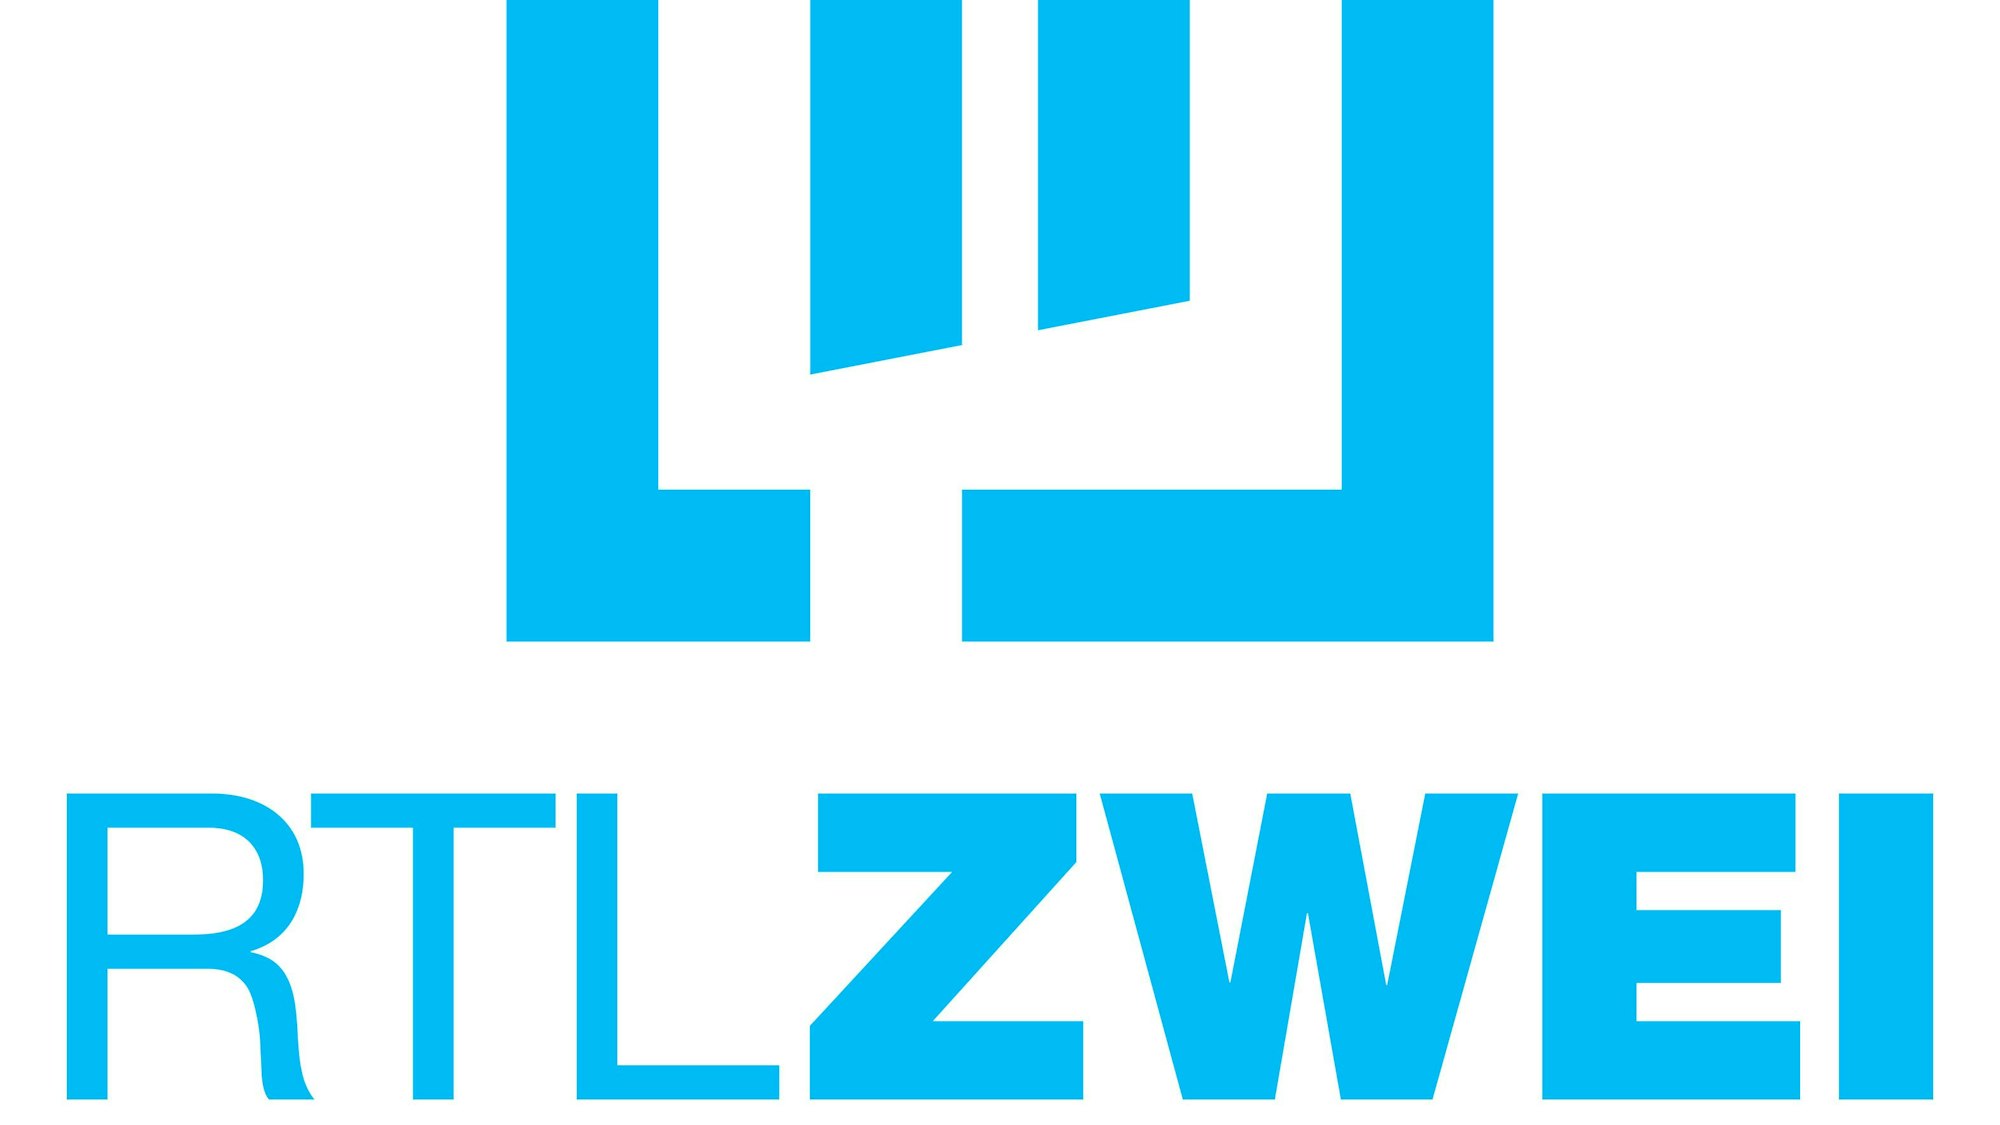 Das Logo des TV-Senders RTL ZWEI